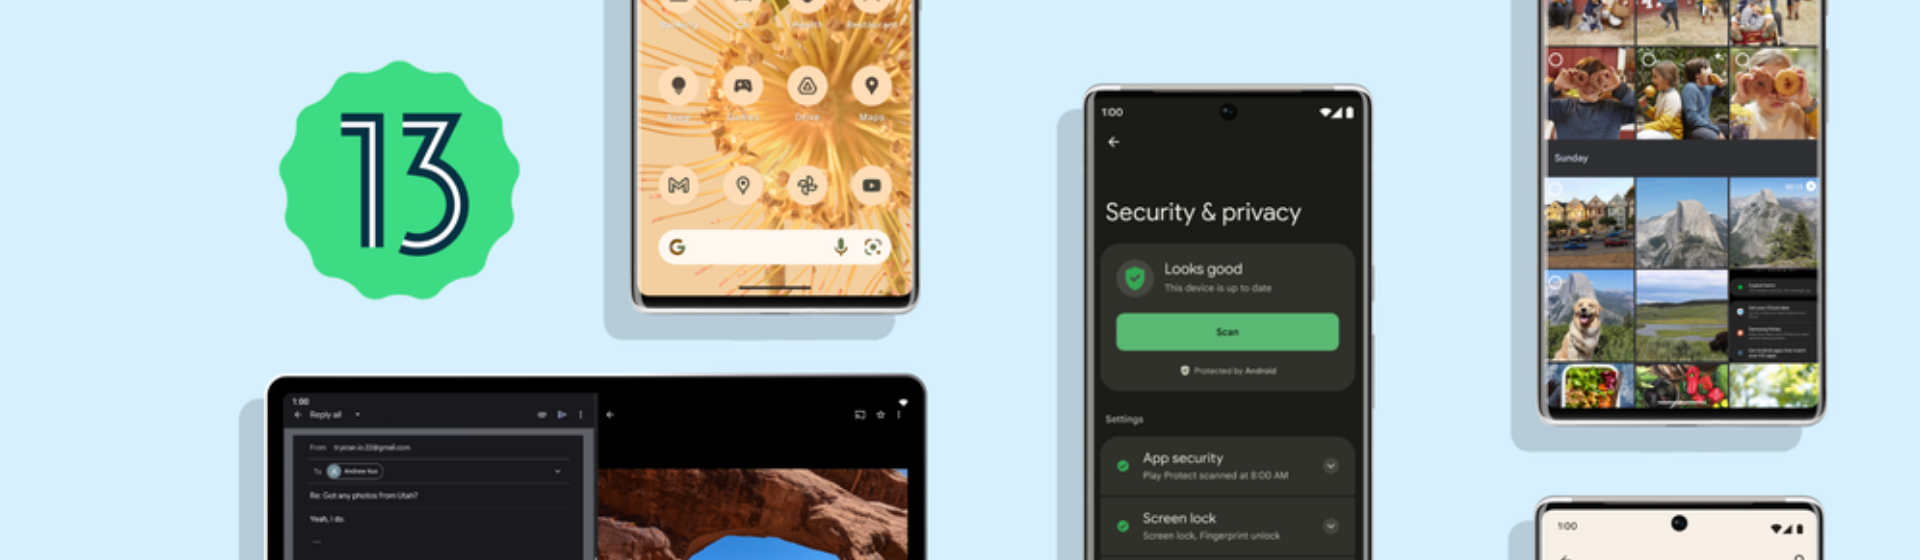 Android 13: veja novidades do novo sistema operacional do Google